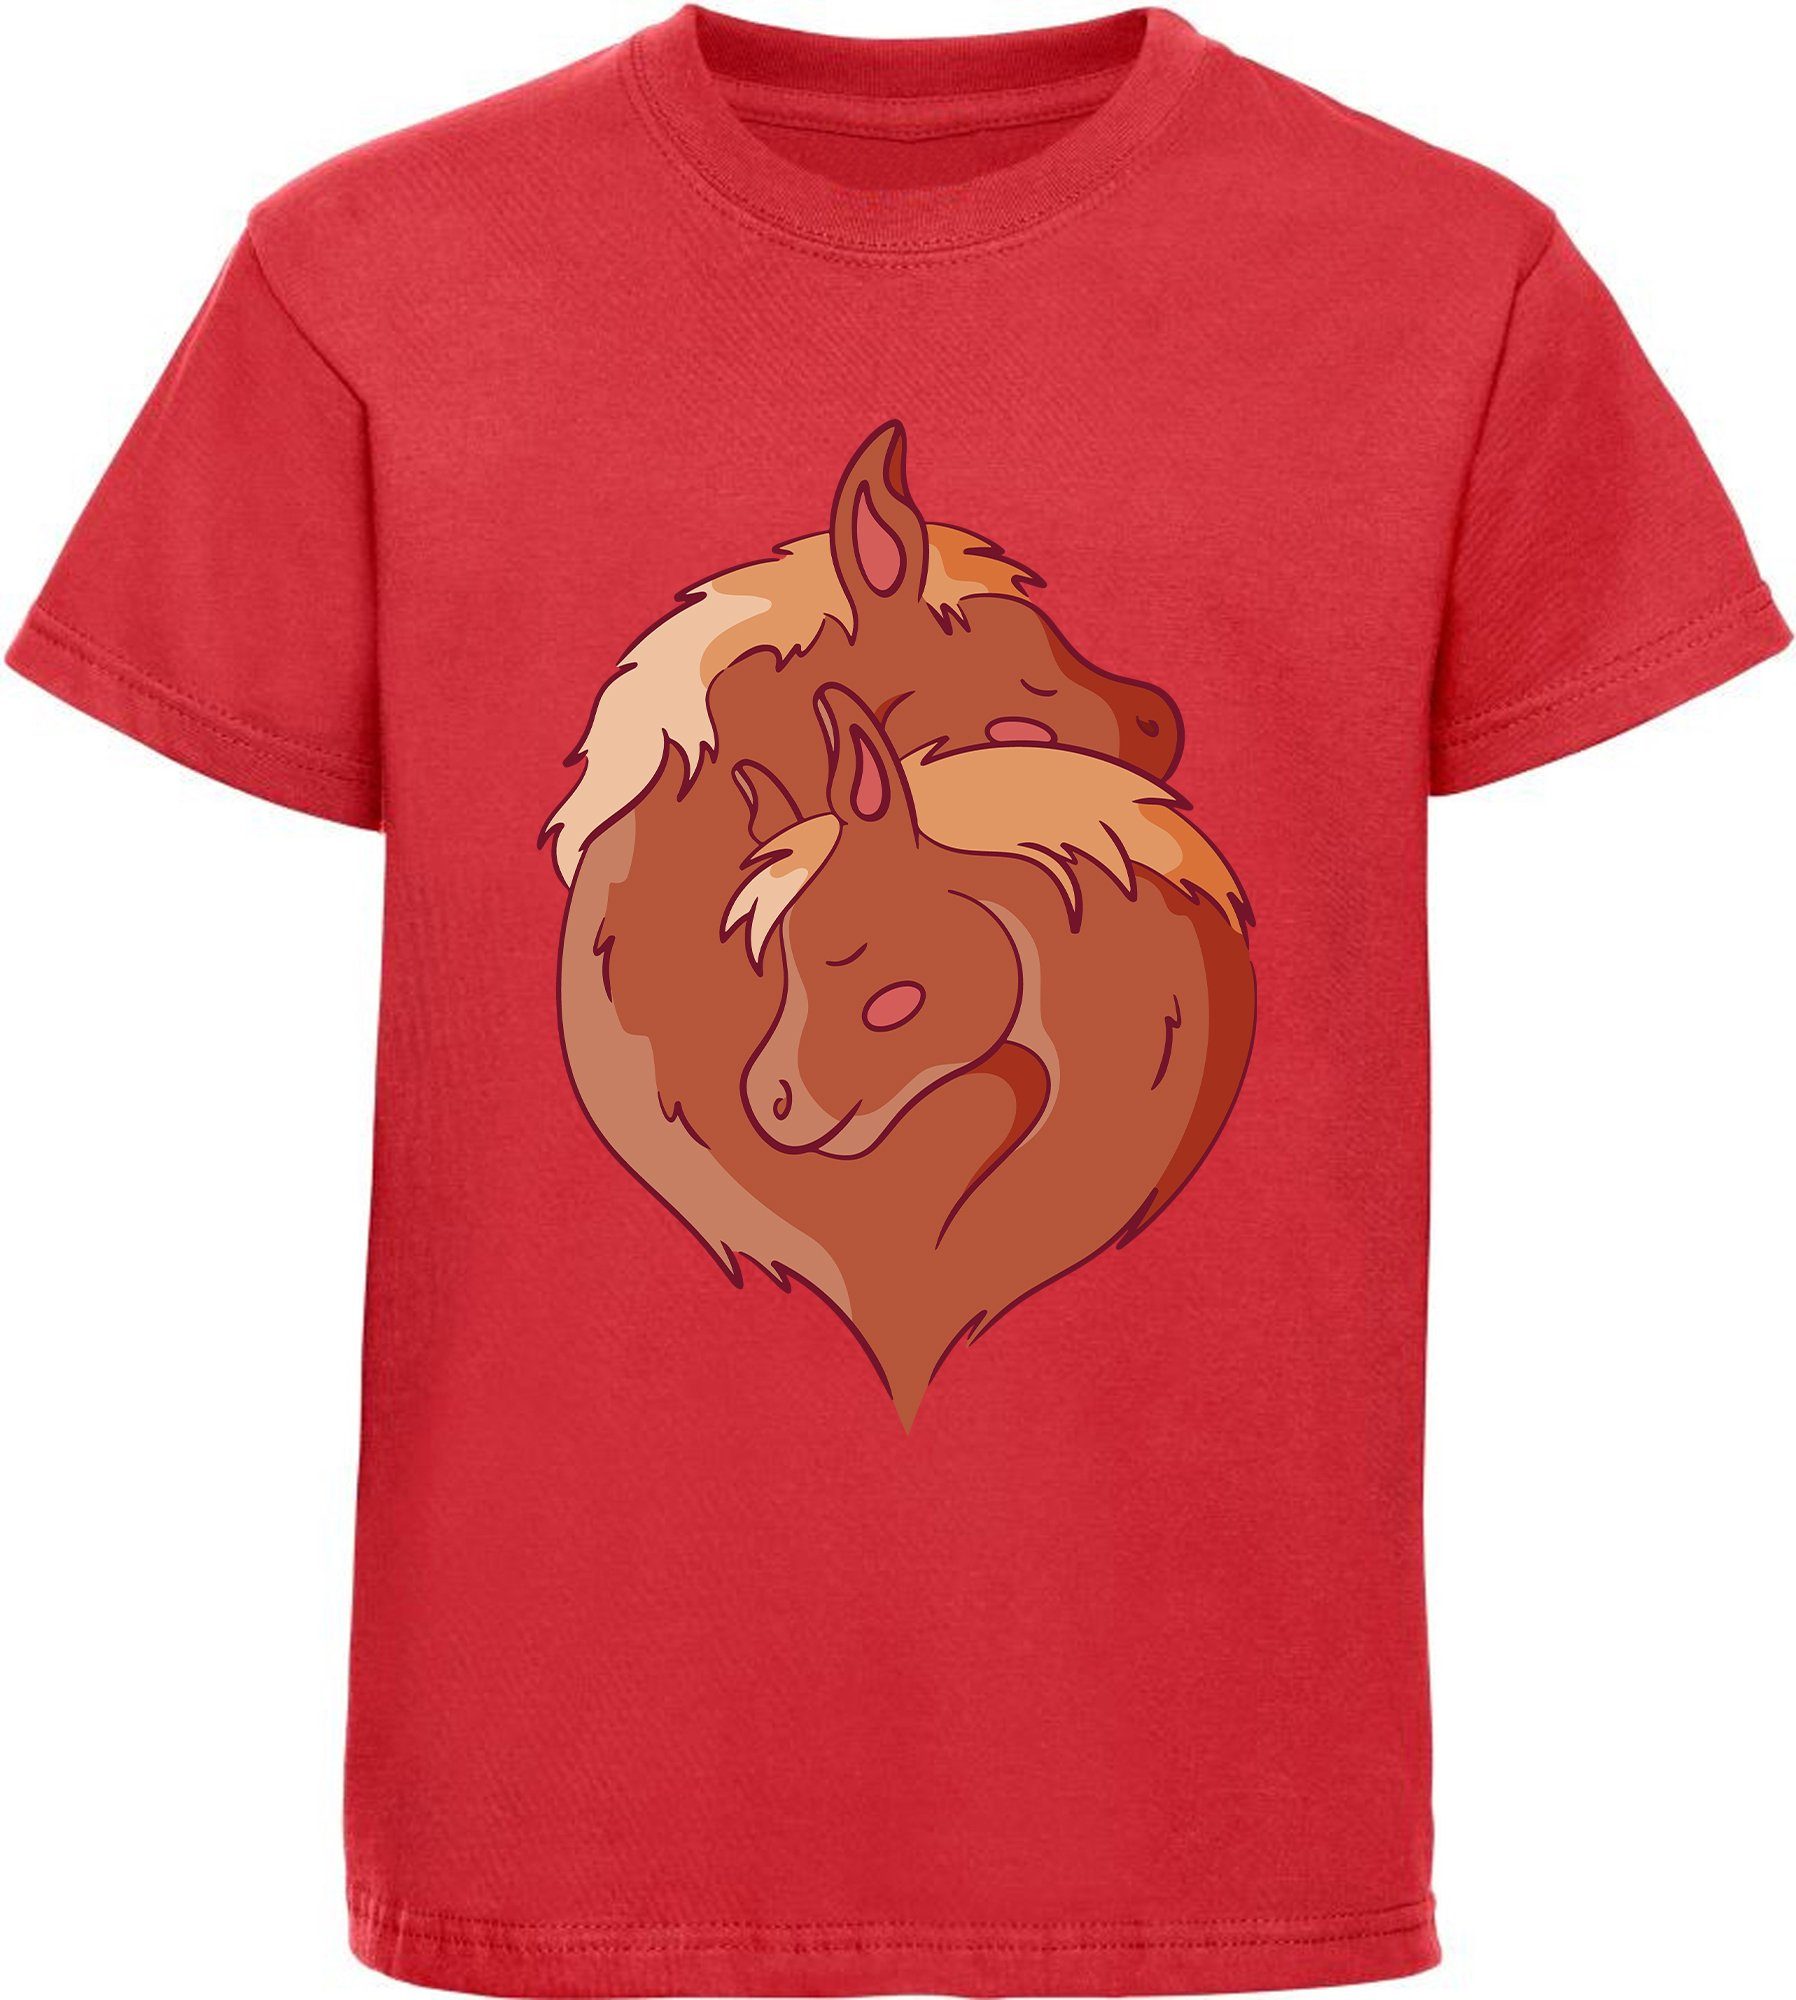 MyDesign24 Print-Shirt bedrucktes Mädchen T-Shirt zwei kuschelnde Pferde im Yin Yang Stil Baumwollshirt mit Aufdruck, i152 rot